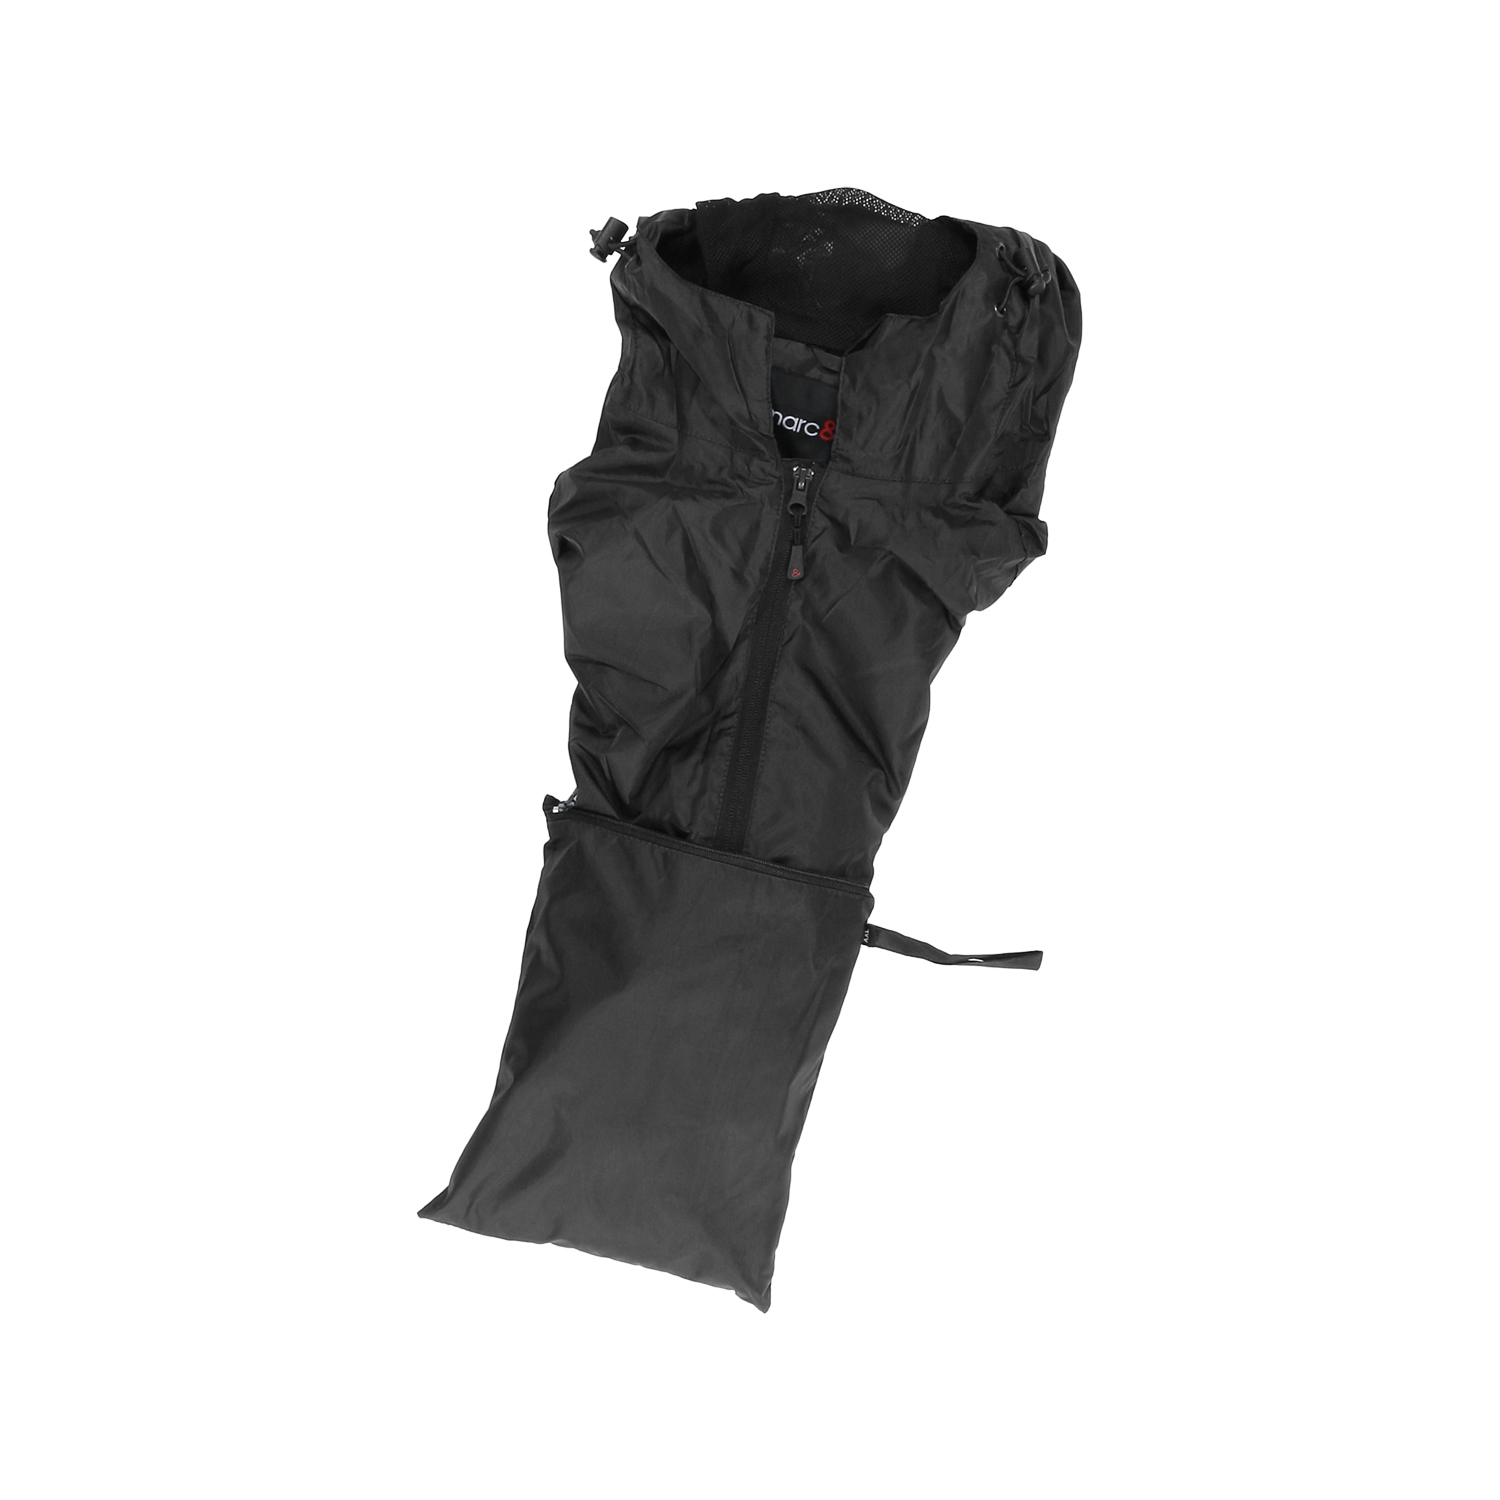 Schwarze Funktions-Regenjacke von marc&mark, erhältlich in großen Größen ab 2XL bis 12XL